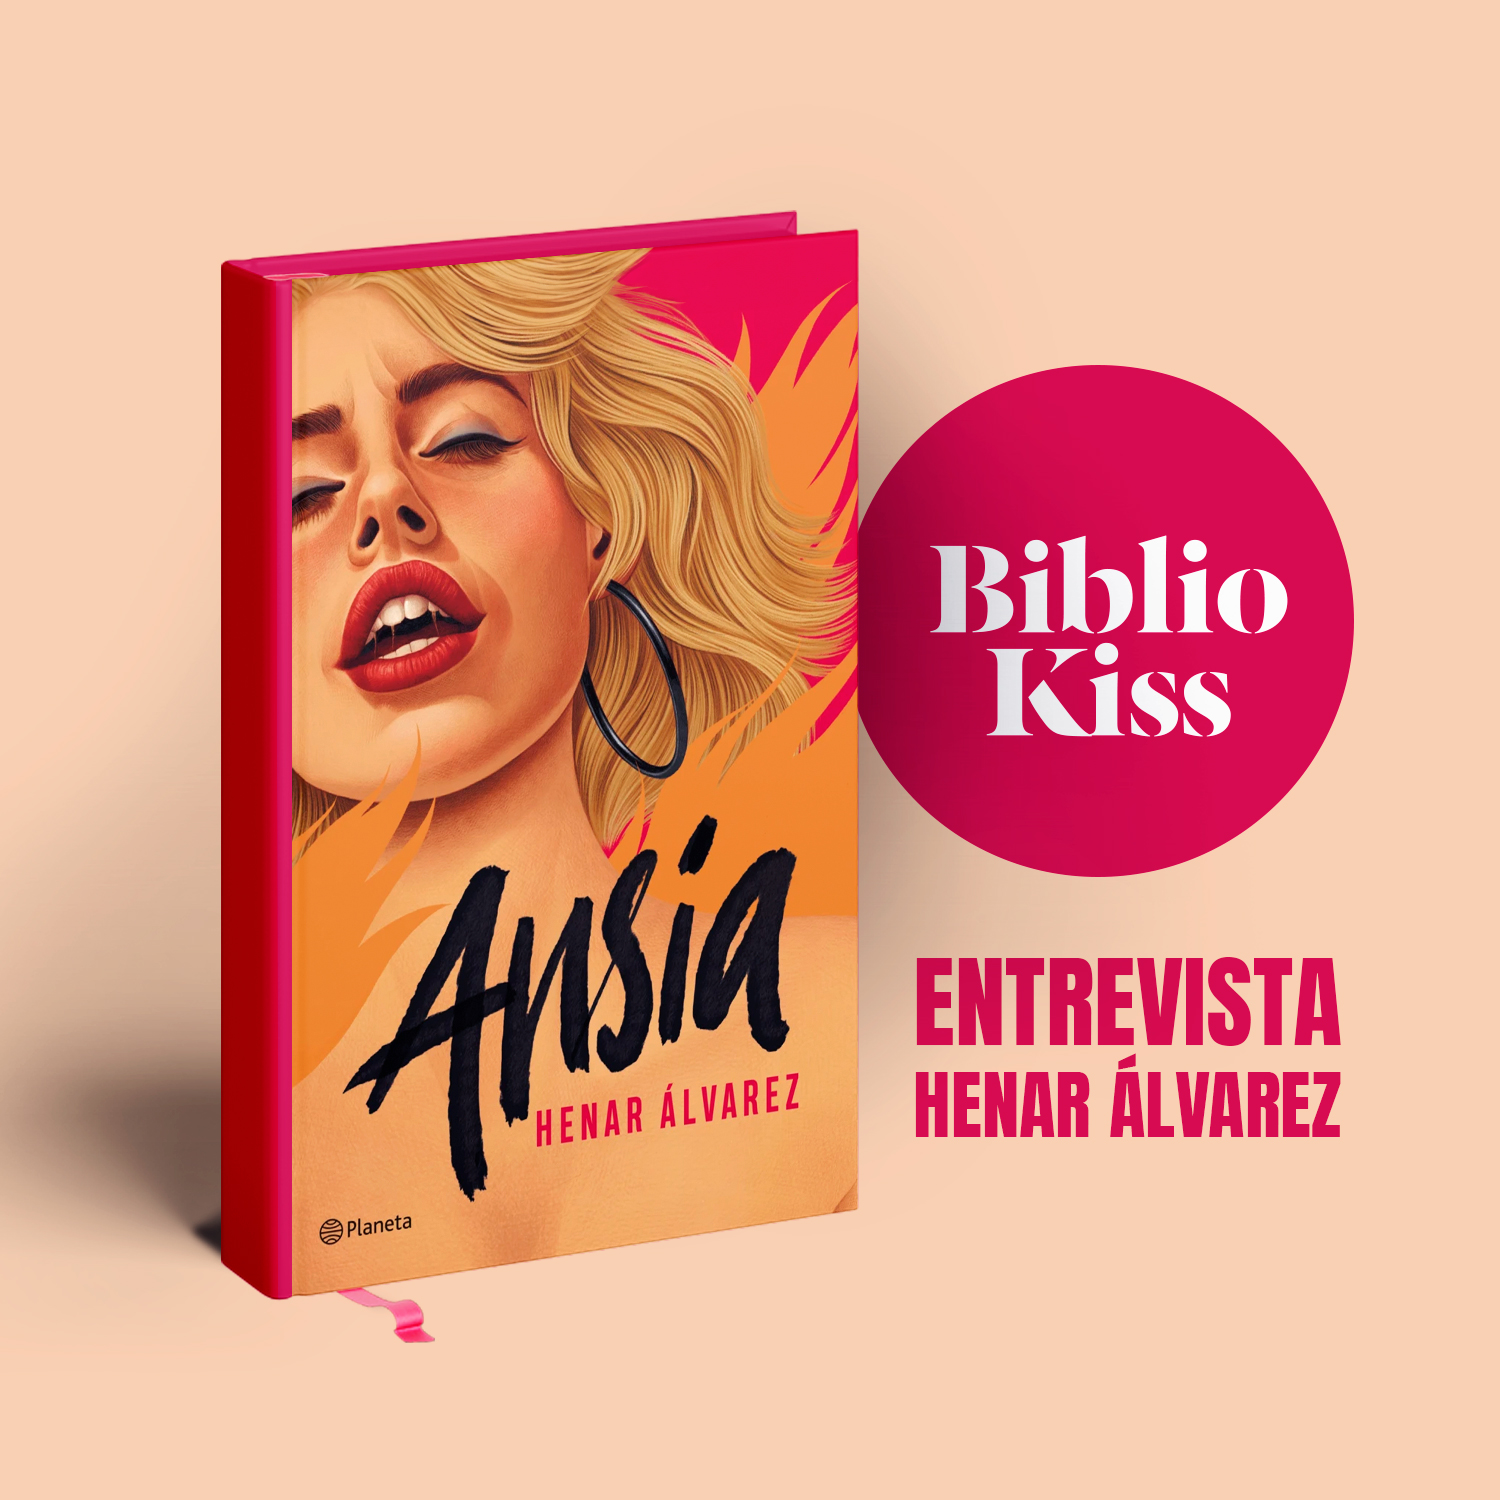 Henar Álvarez vuelve con “Ansia” a las librerías